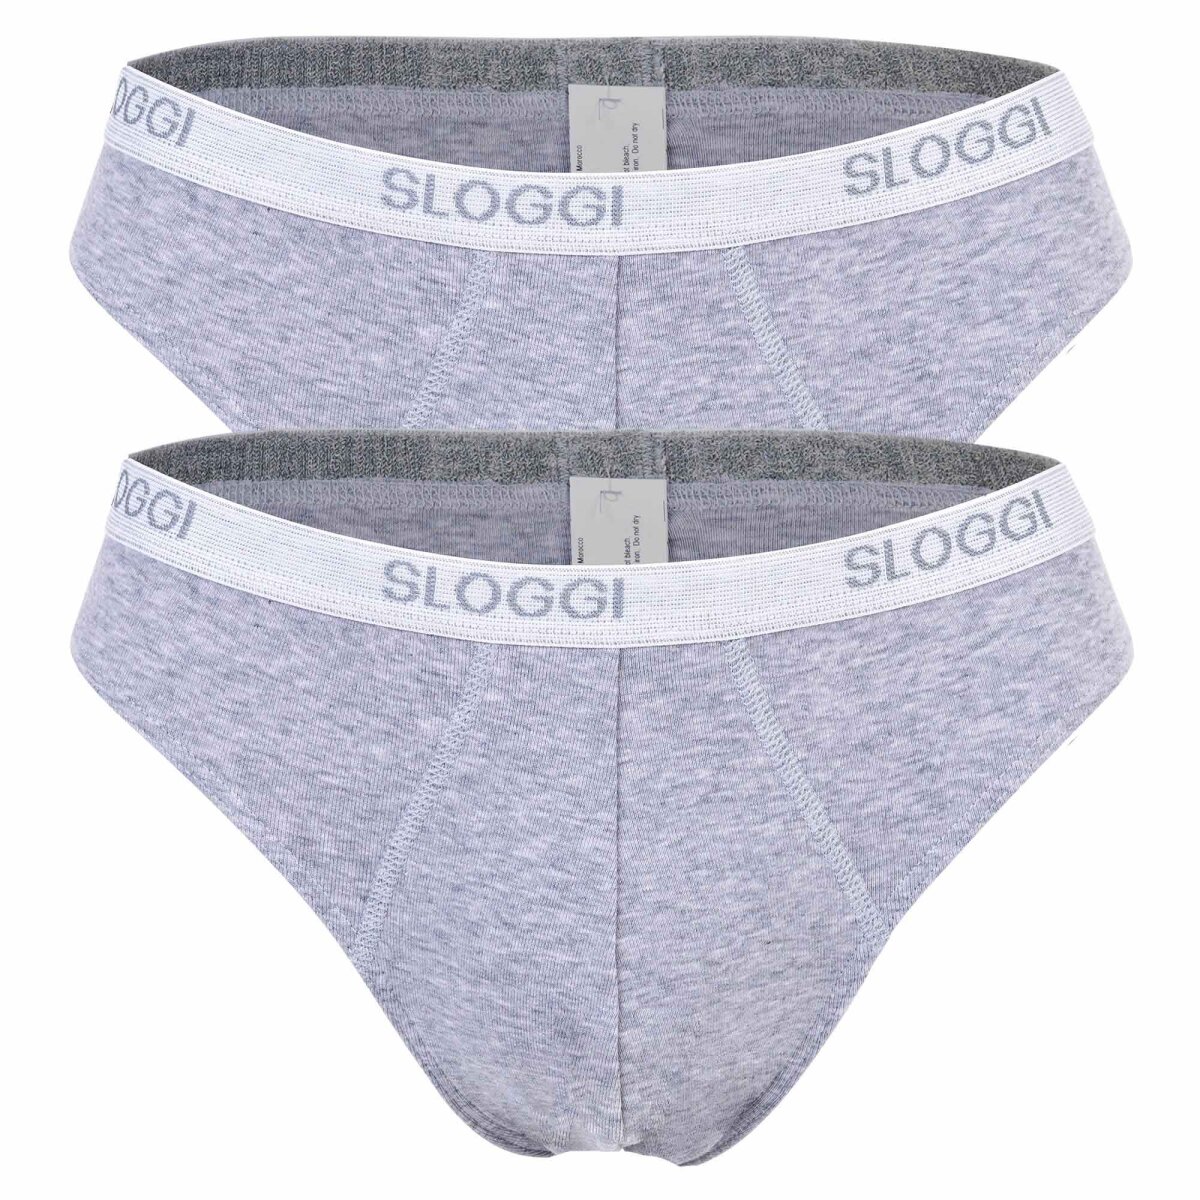 Sloggi Herren Slips, 2er Pack - Basic Mini, Unterwäsche, Unterhose, B,  24,95 €